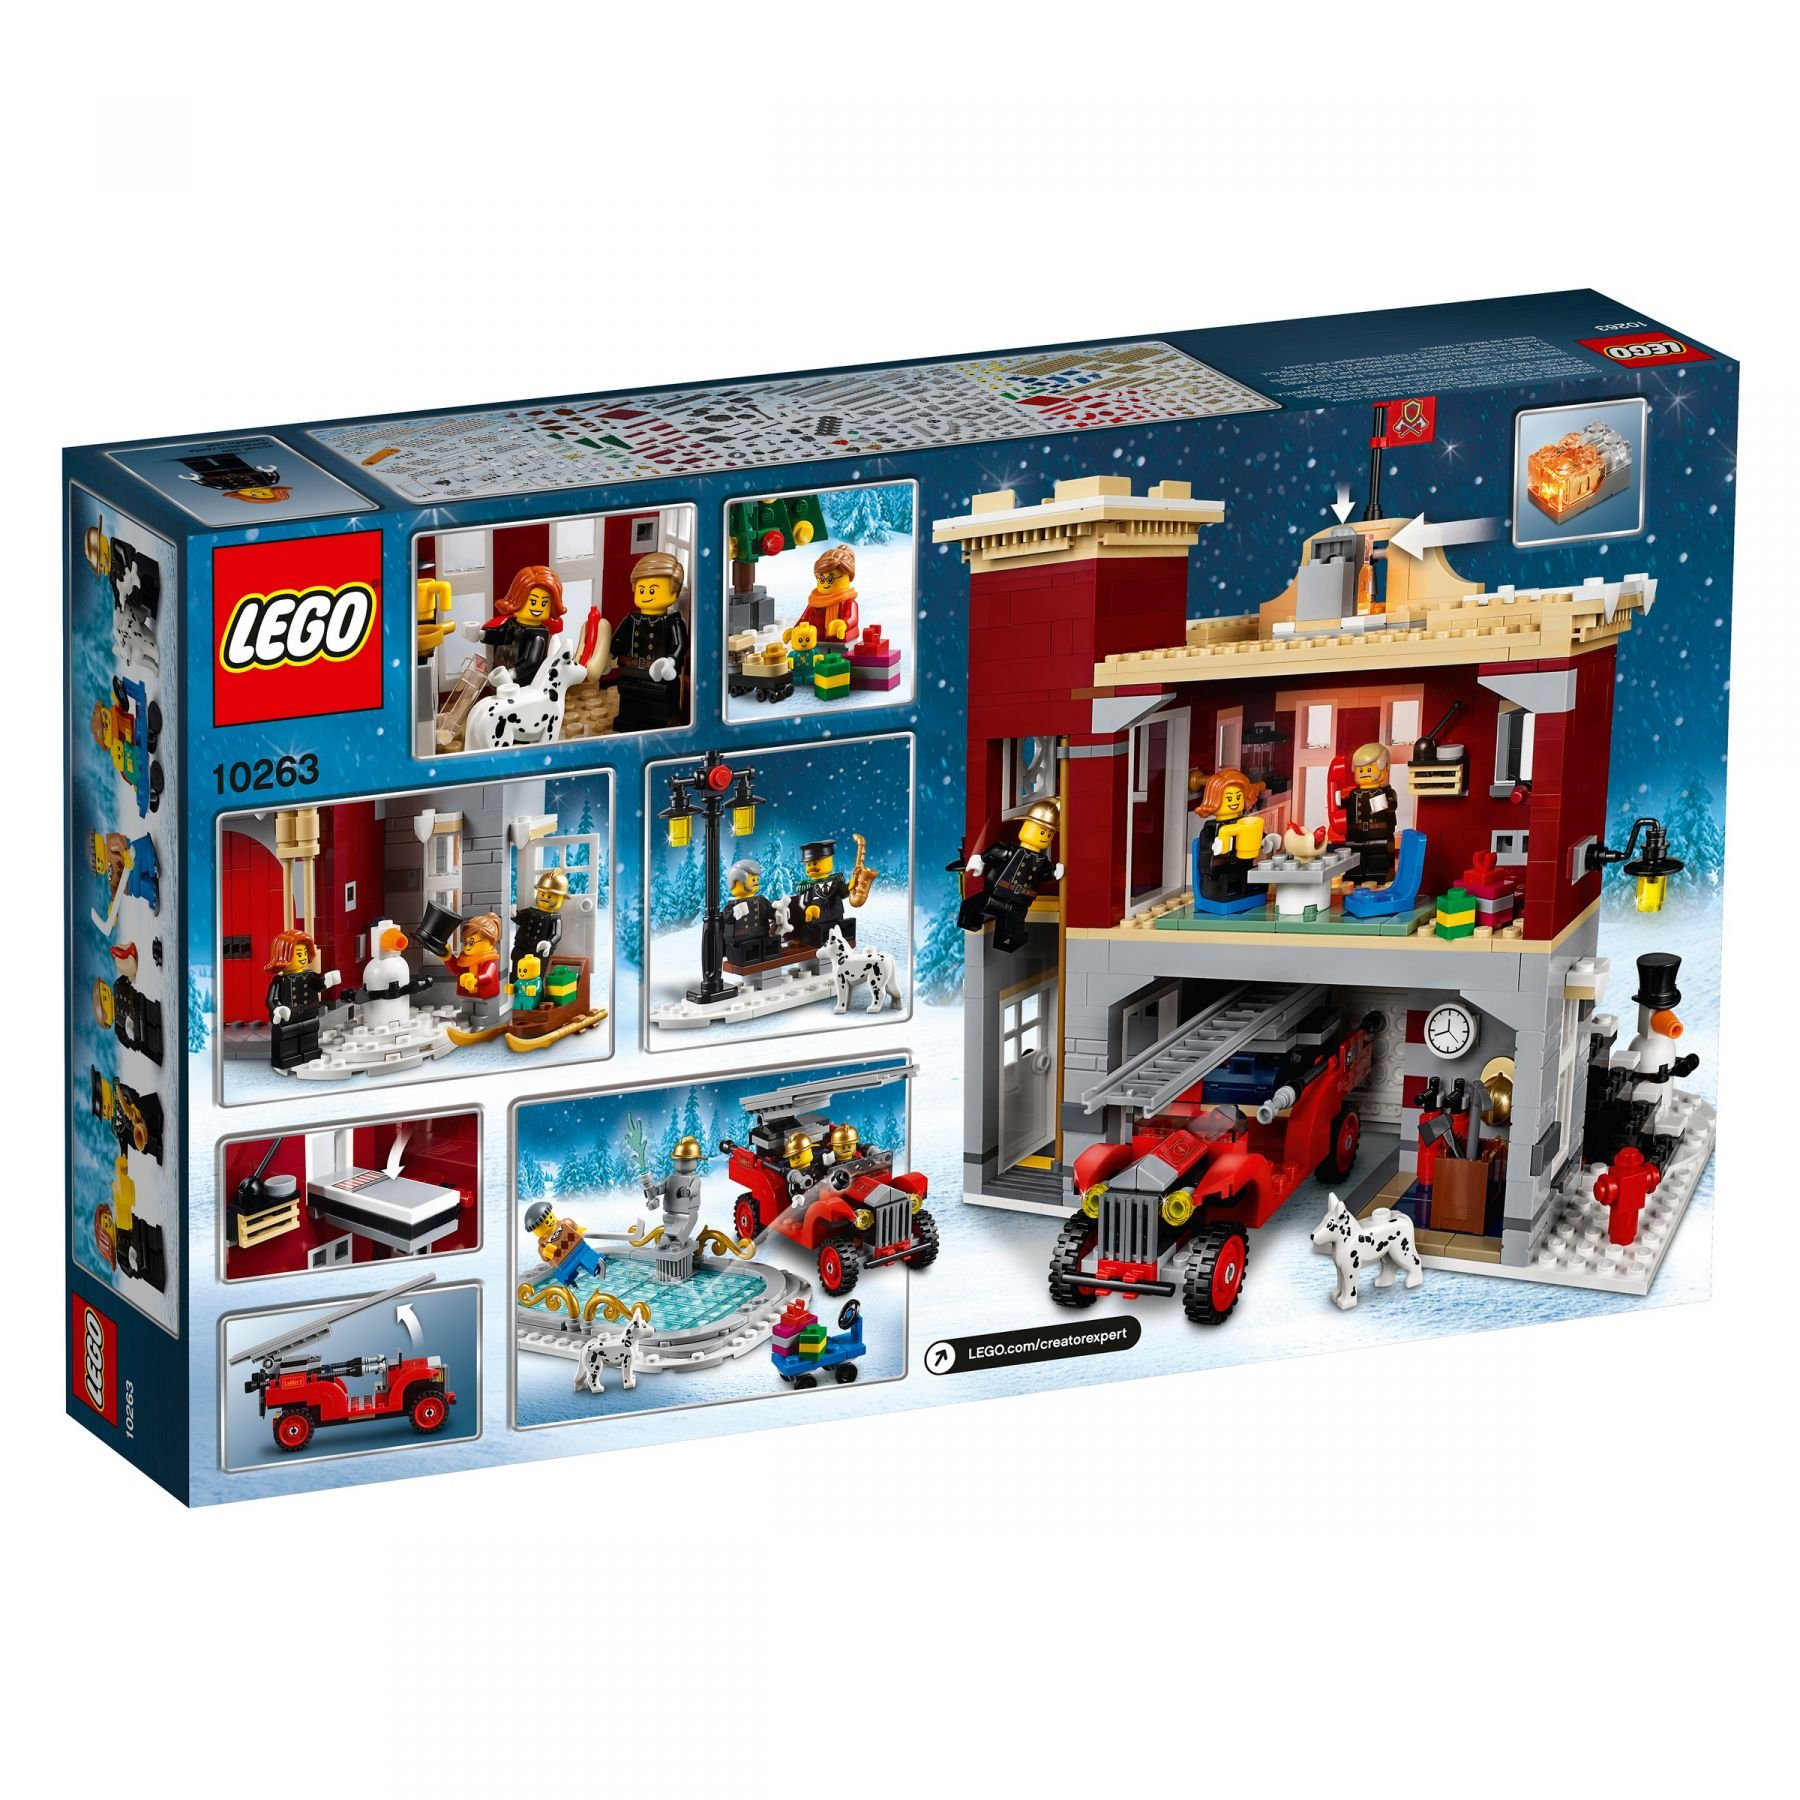 LEGO Creator Expert Winterliche 10263 Feuerwehrstation Bausatz